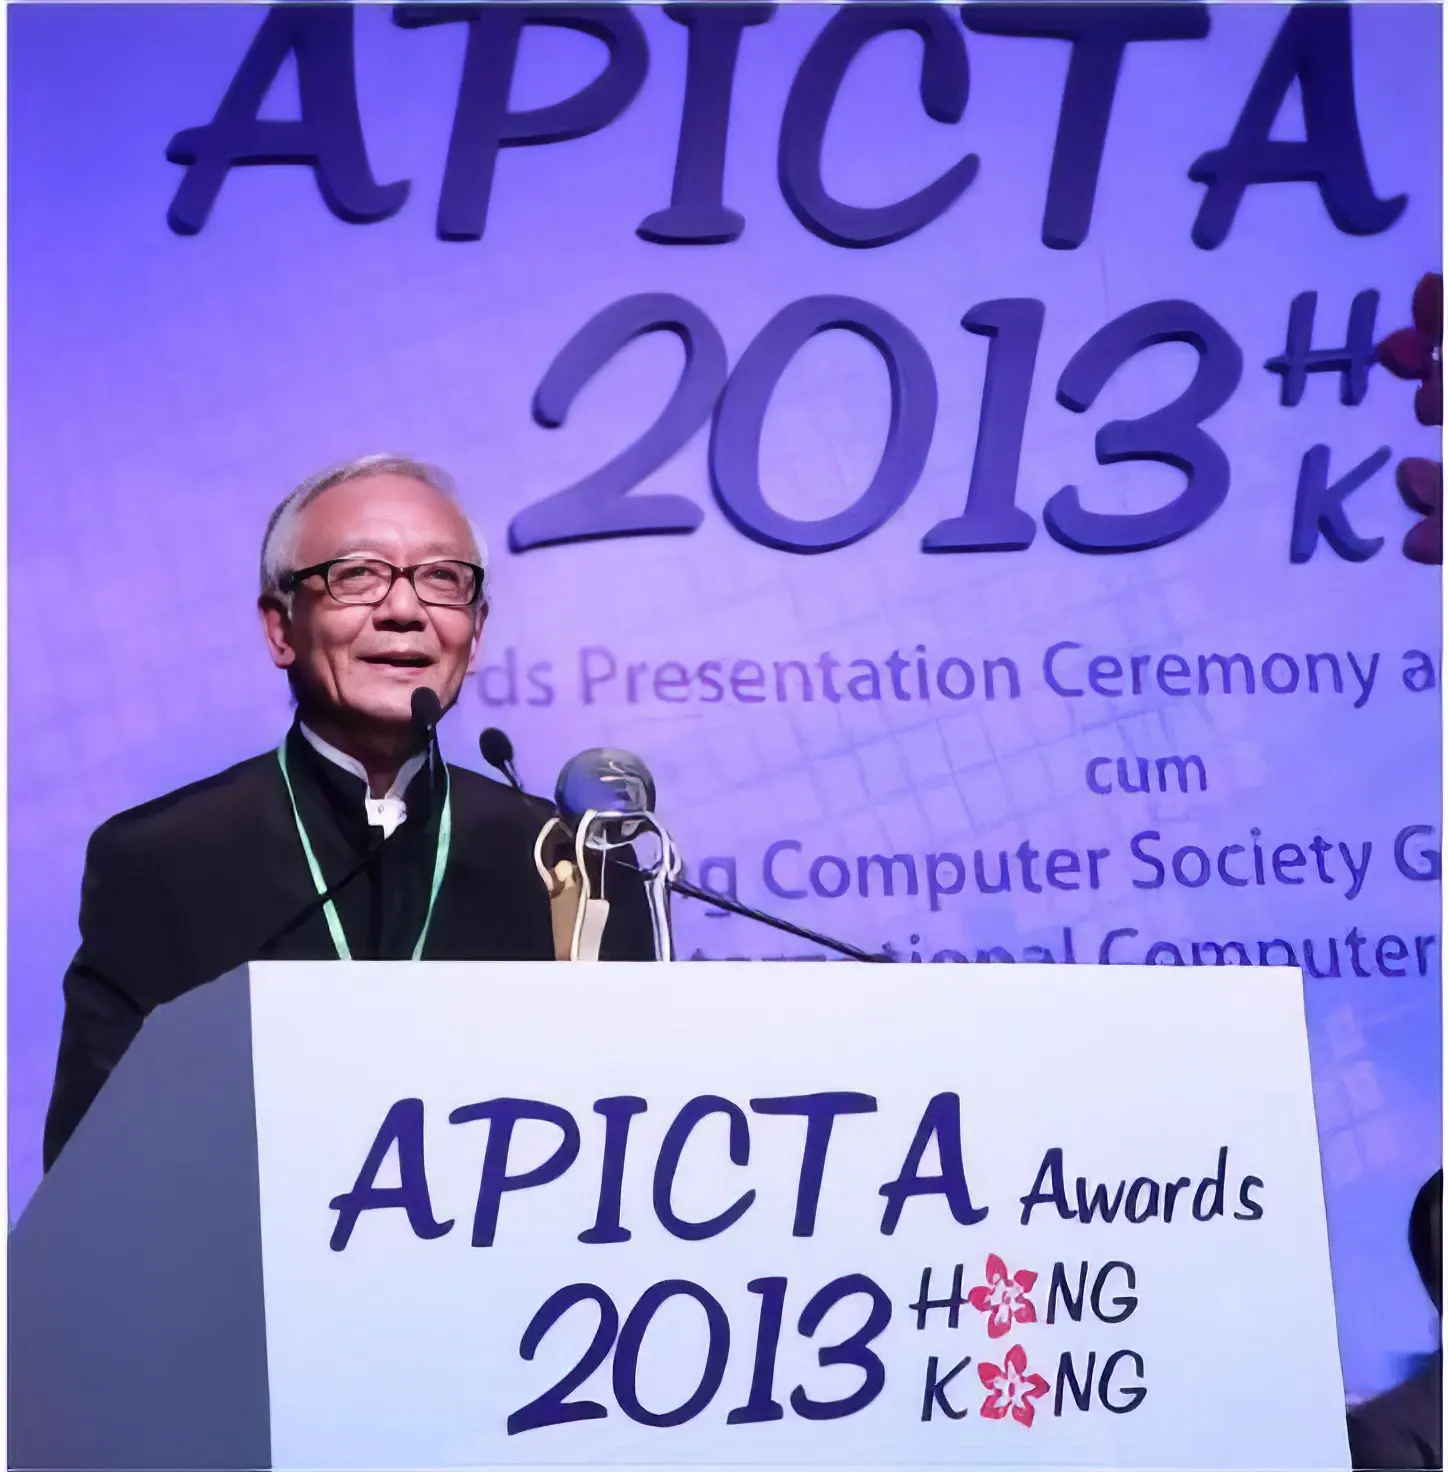 APICTA 2013 Hong Kong